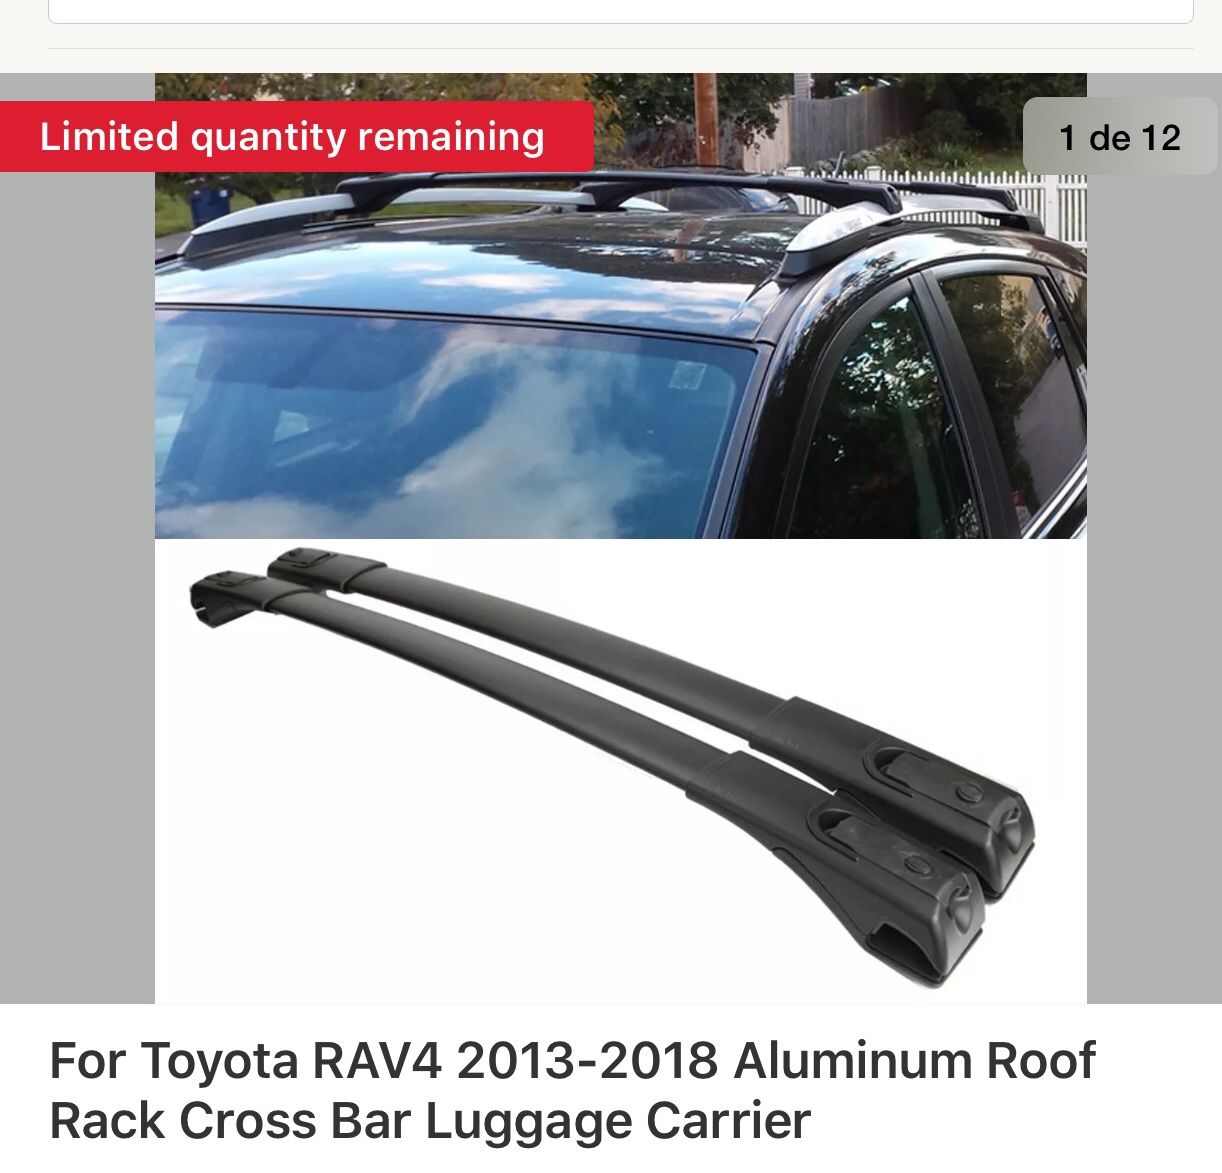 Aluminum Roof for Toyota Rav4 2013-2018